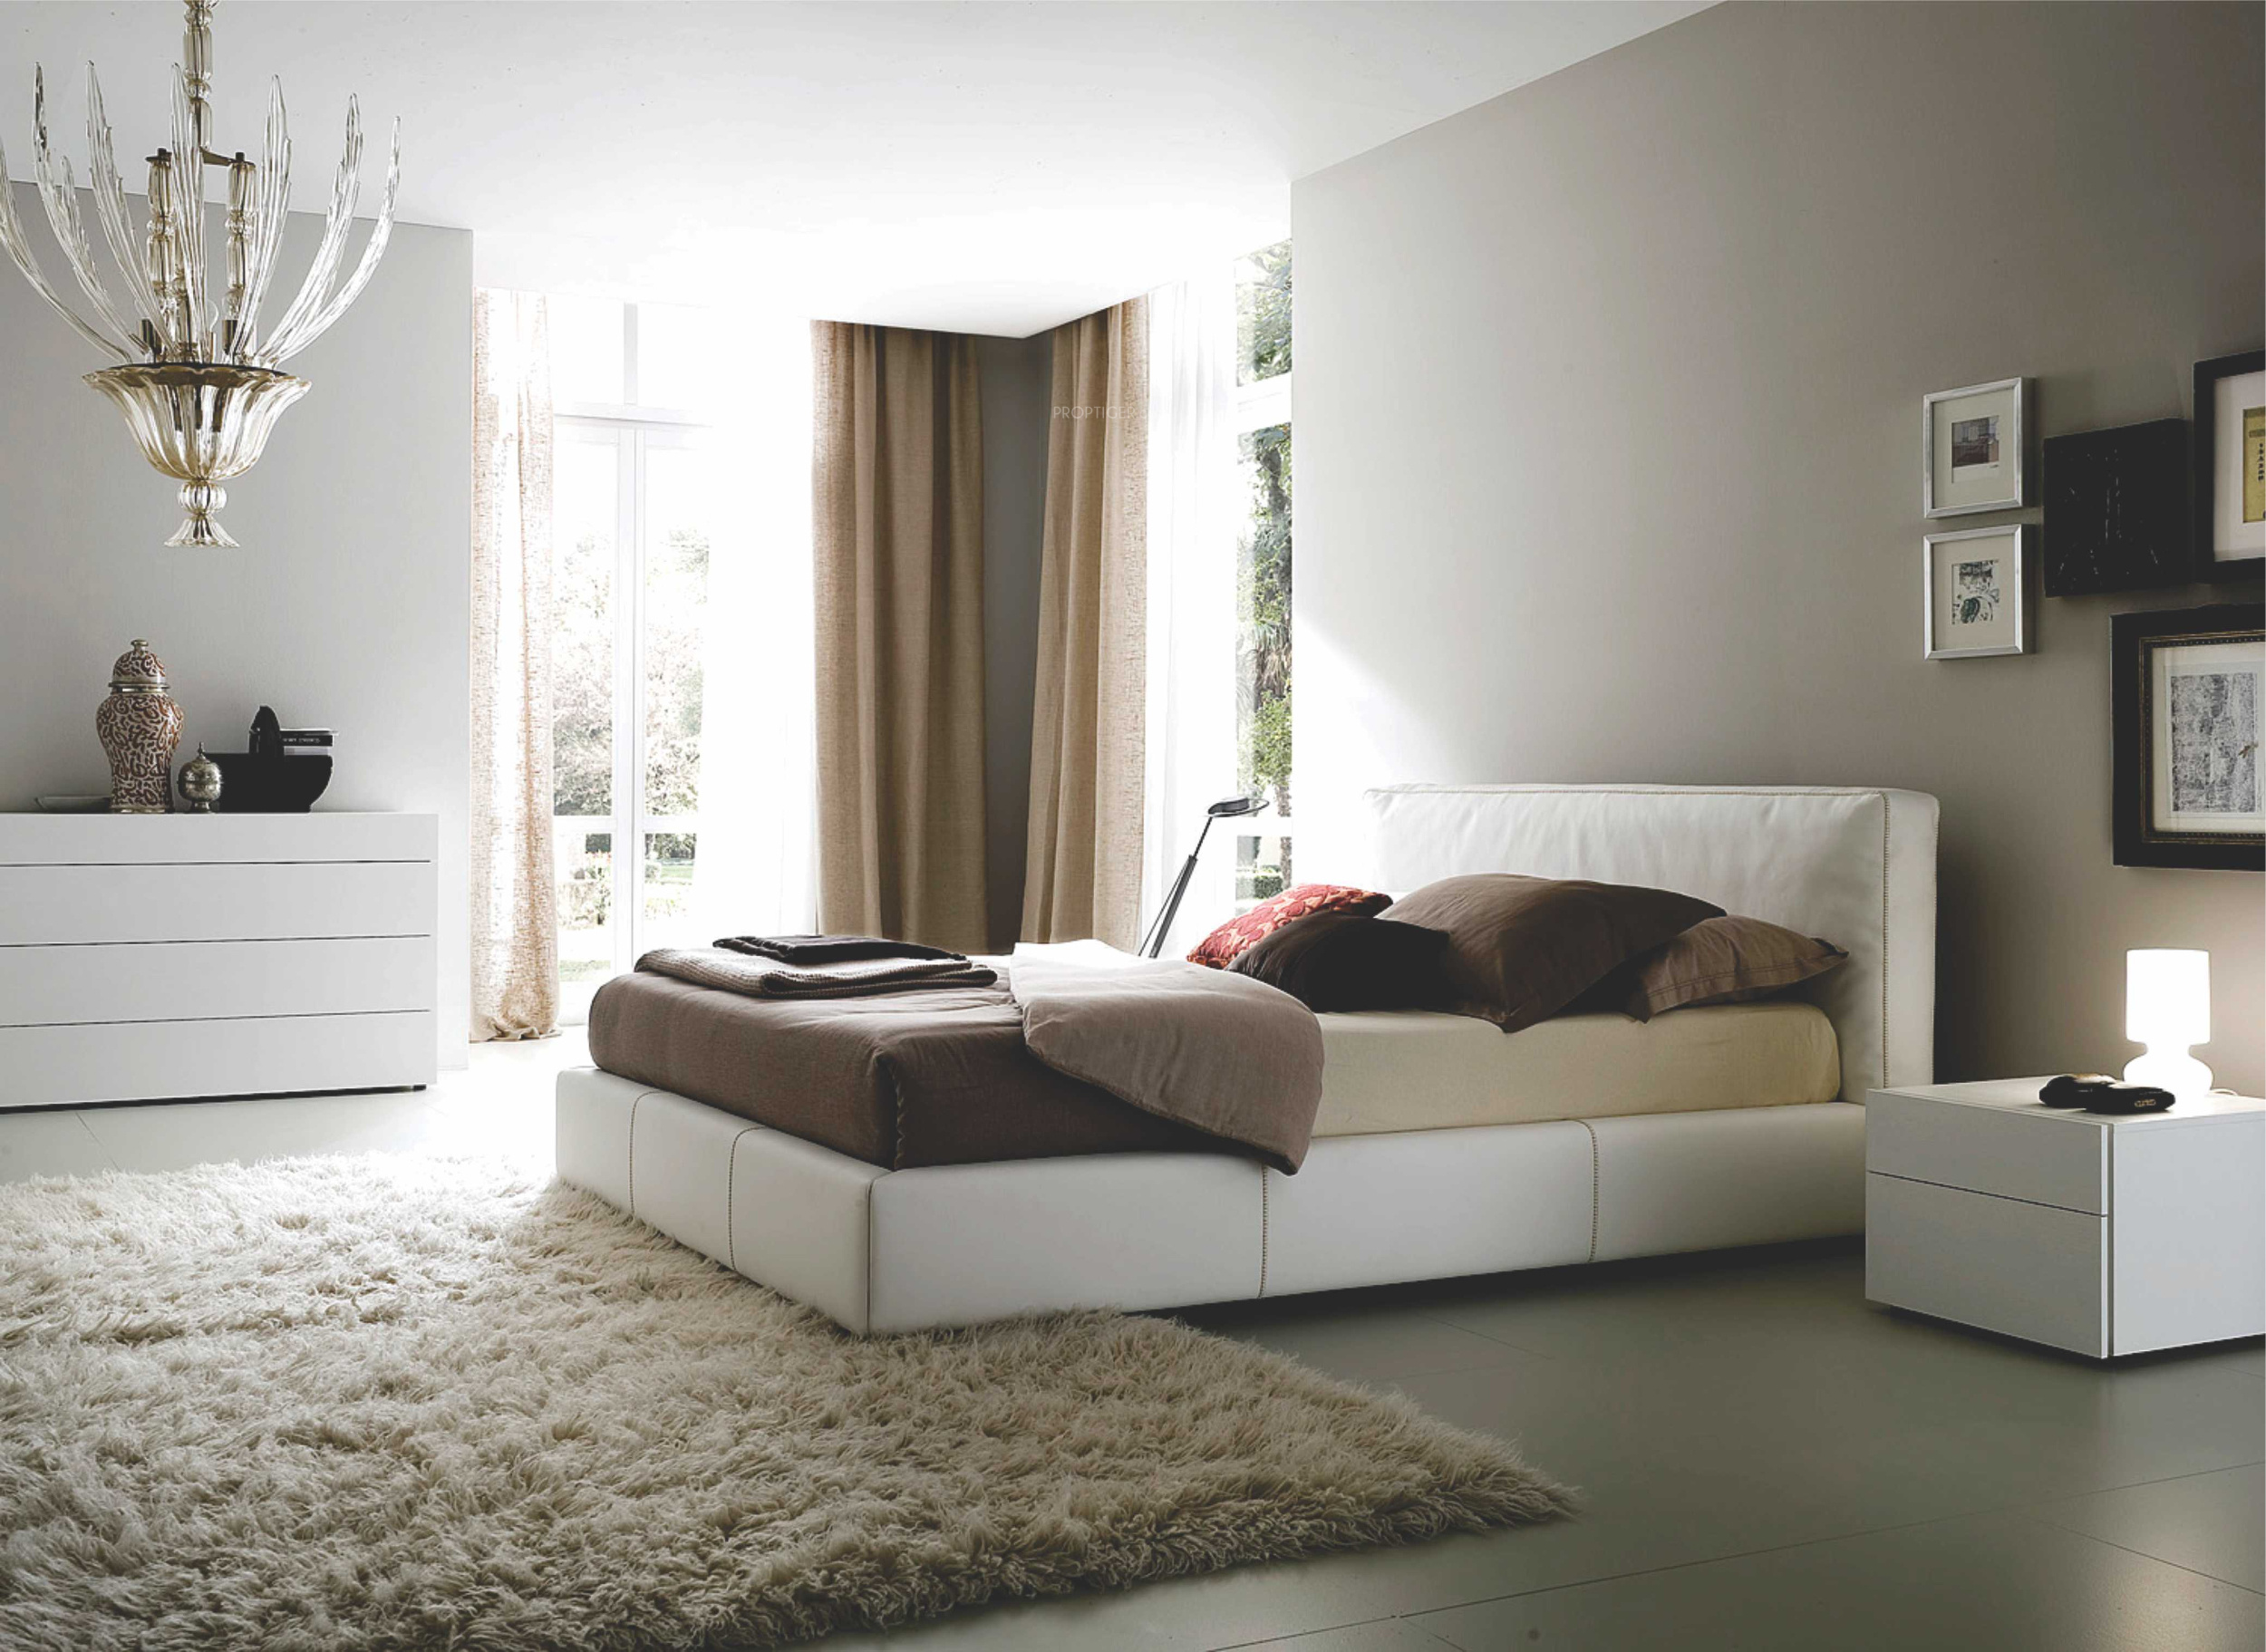 Современные спальни мебель интересные модели